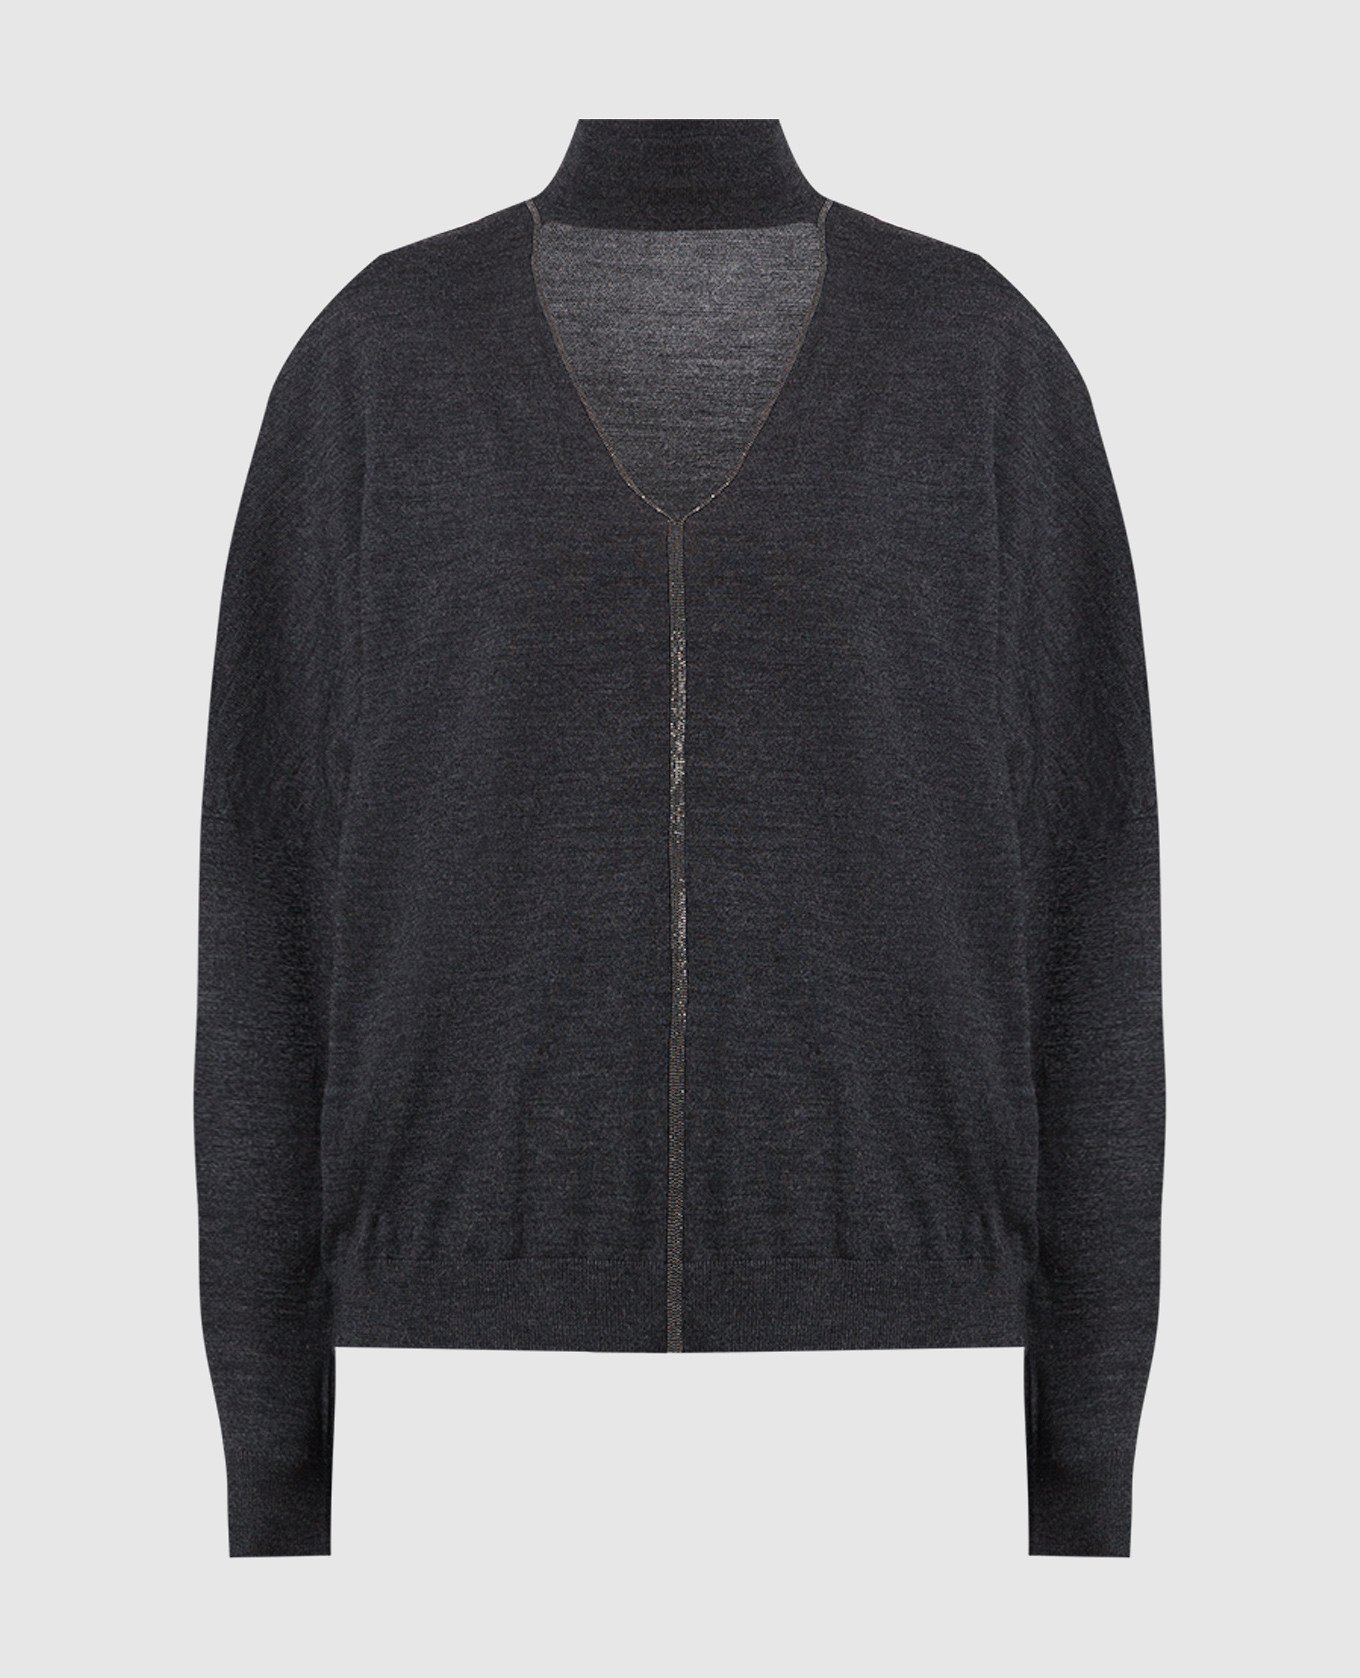 Темно-серый пуловер из шерсти и кашемира с эколатунью